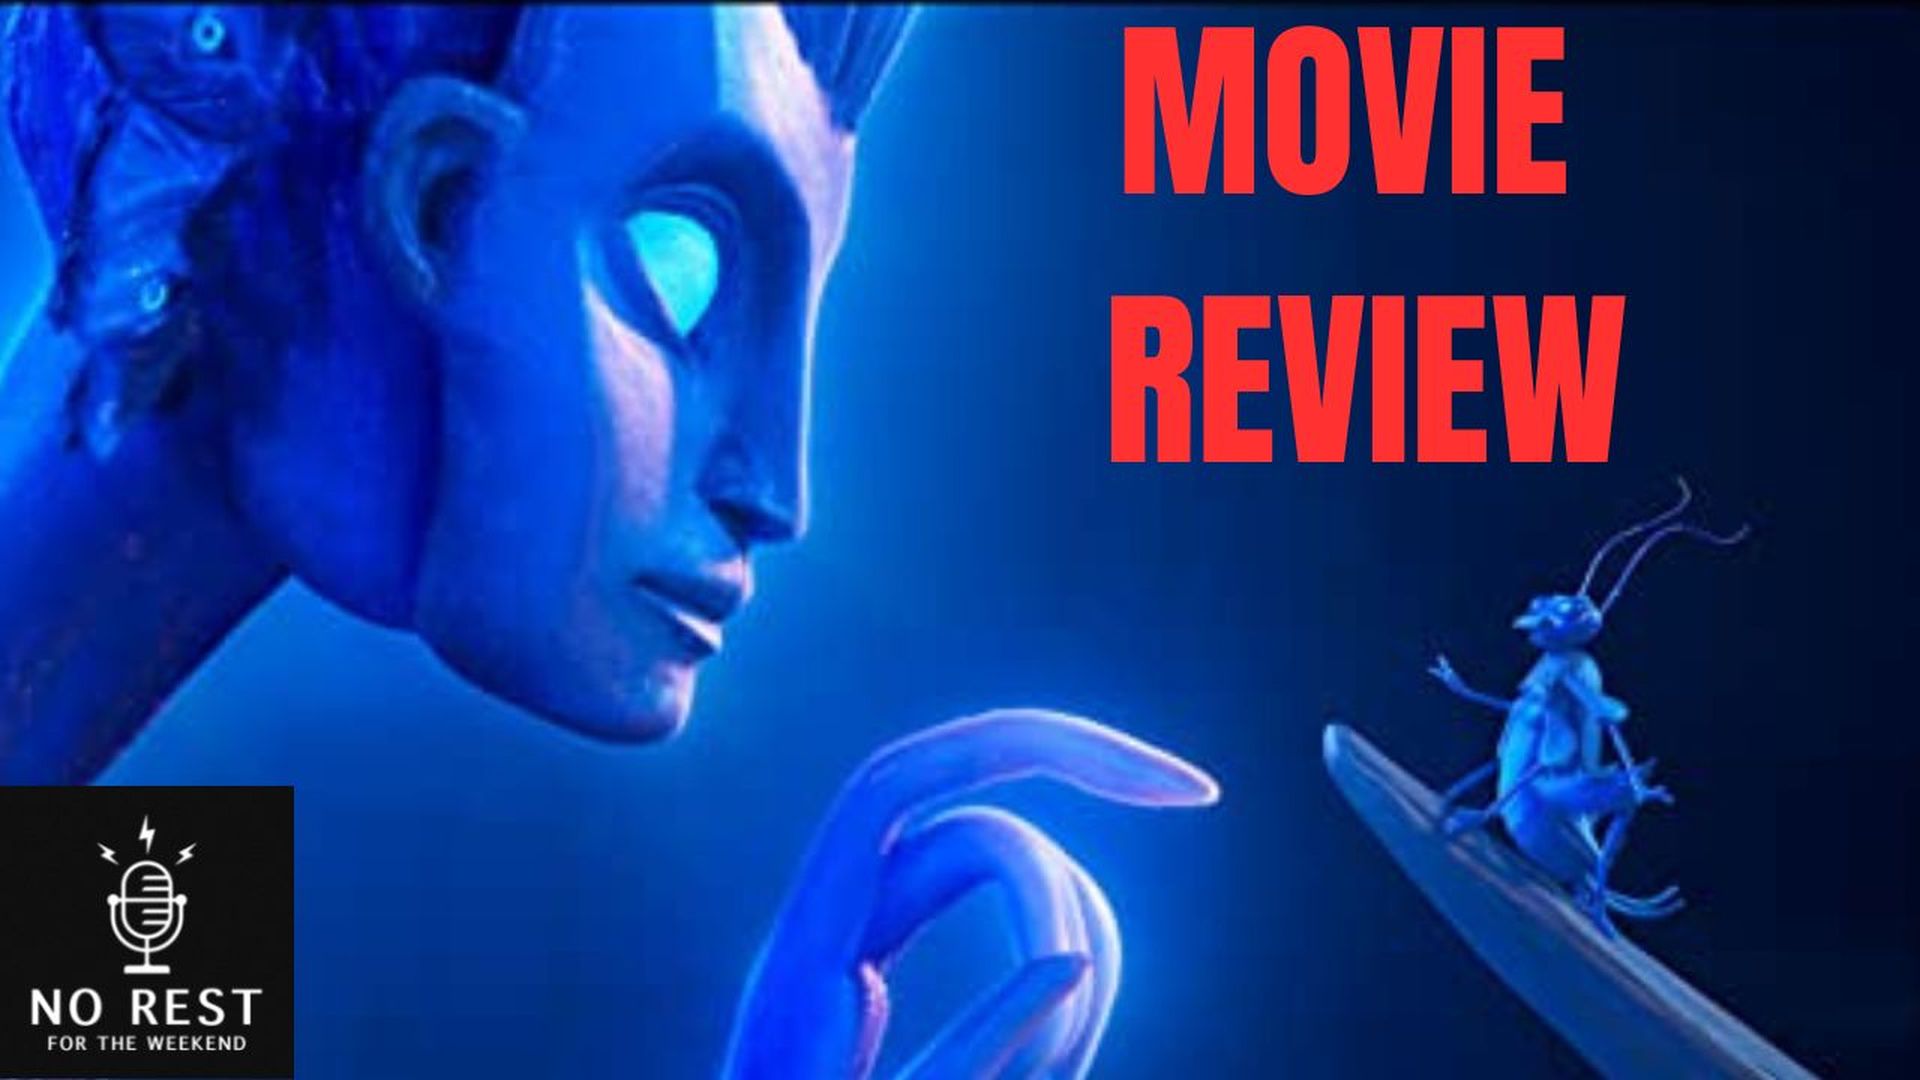 Movie Review: Guillermo Del Toro's Pinocchio